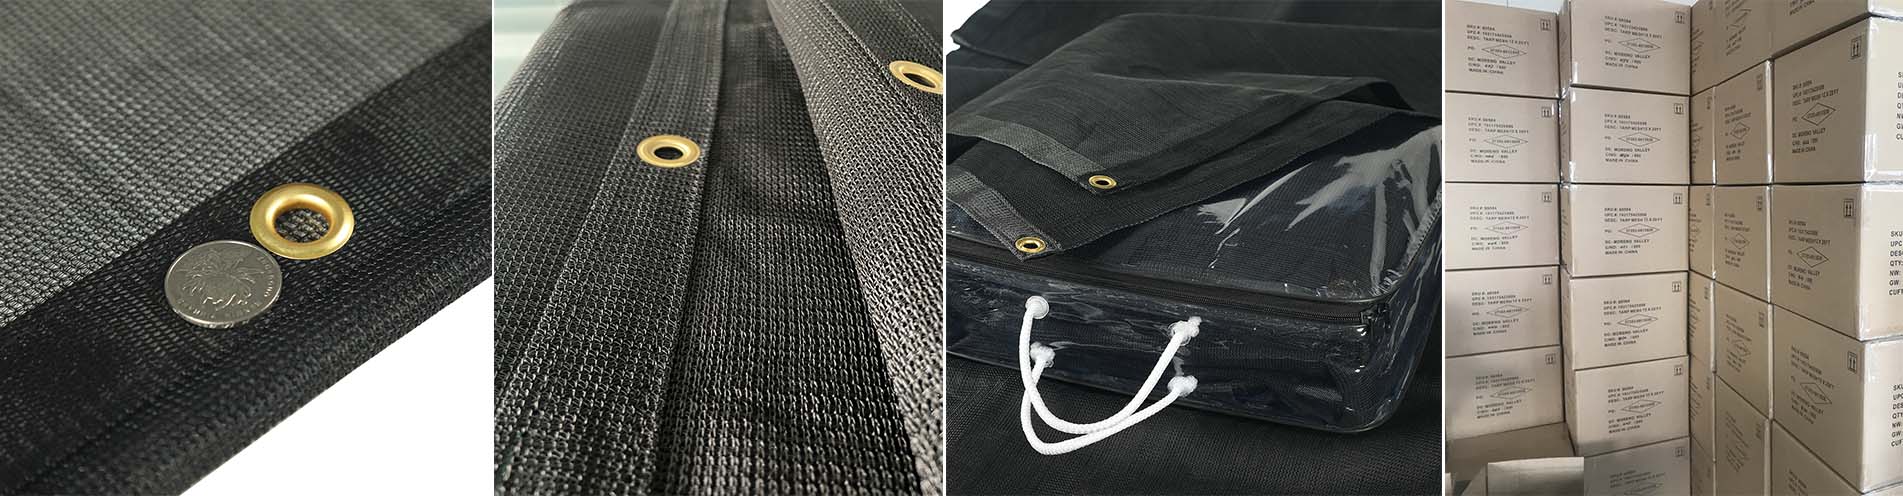 black mesh tarps 60%--90% shade rating shade mesh tarps package with carton 